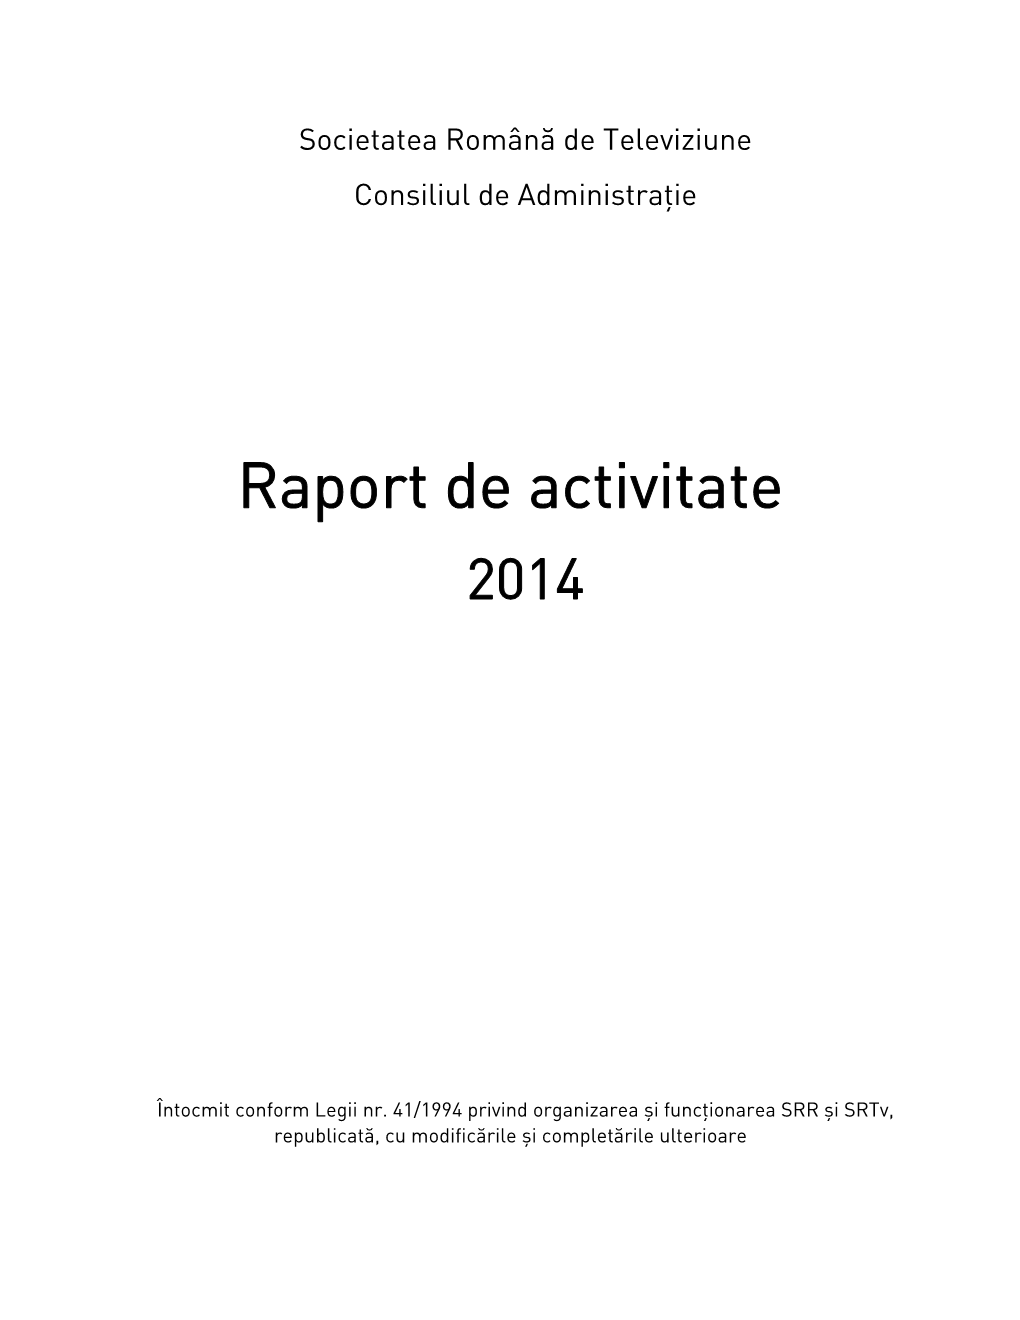 Raport De Activitate TVR Pe 2014